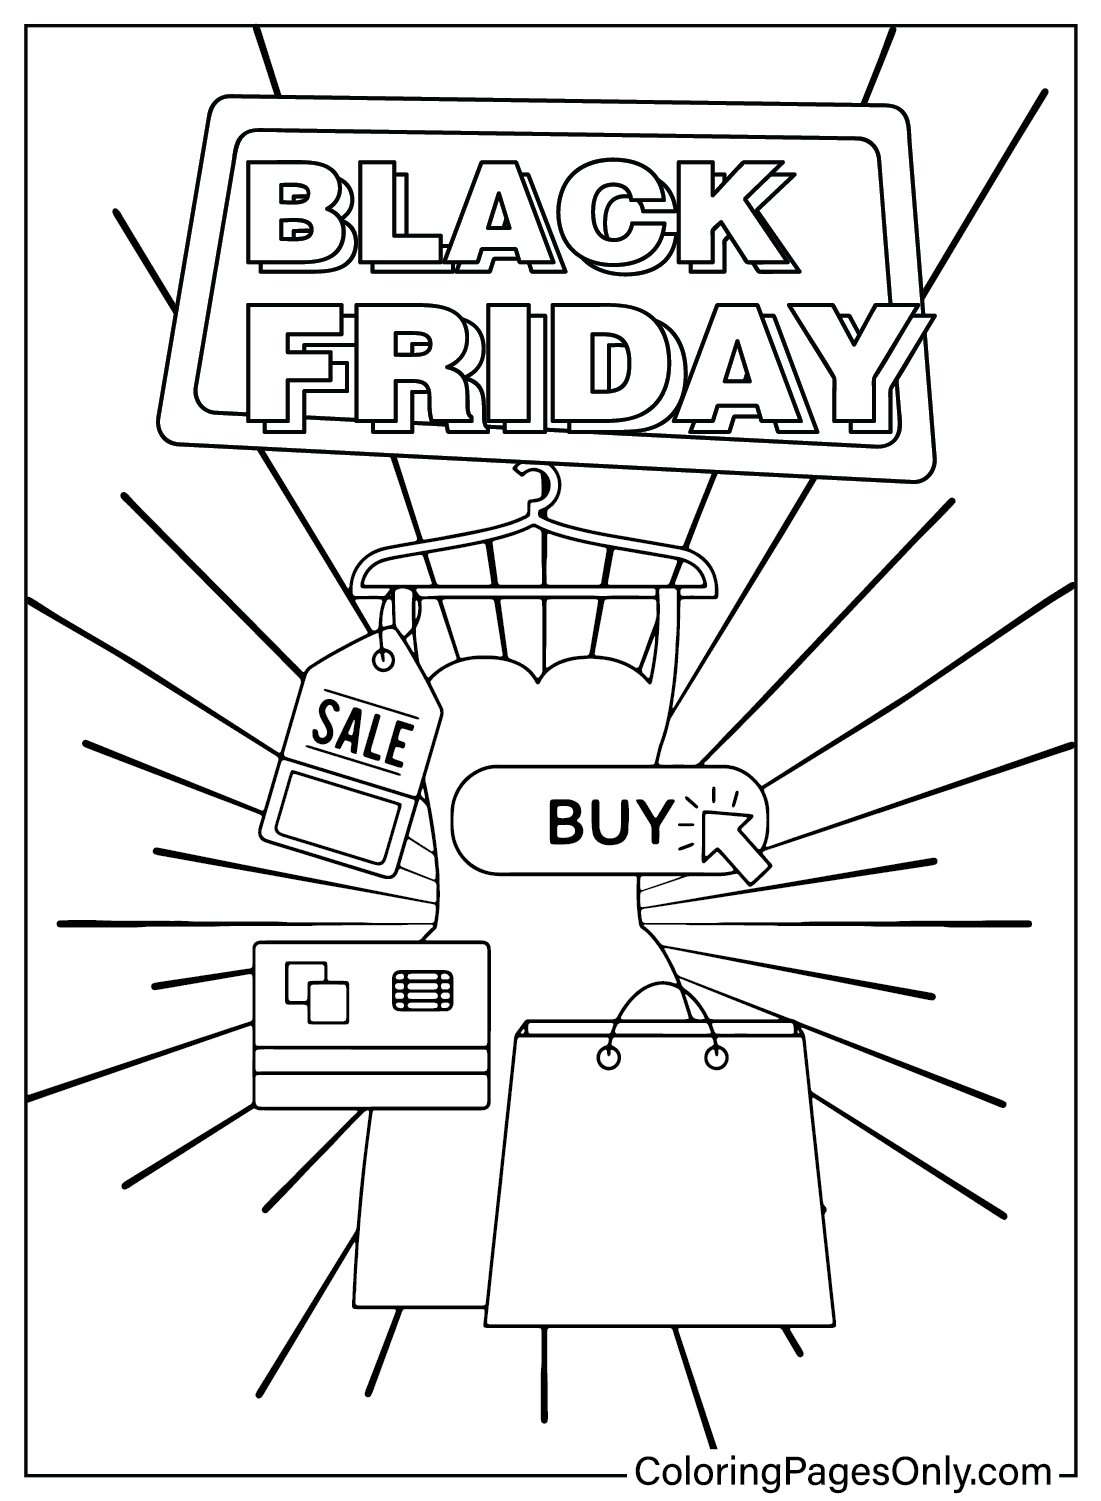 Páginas para colorear del Black Friday para niños del Black Friday